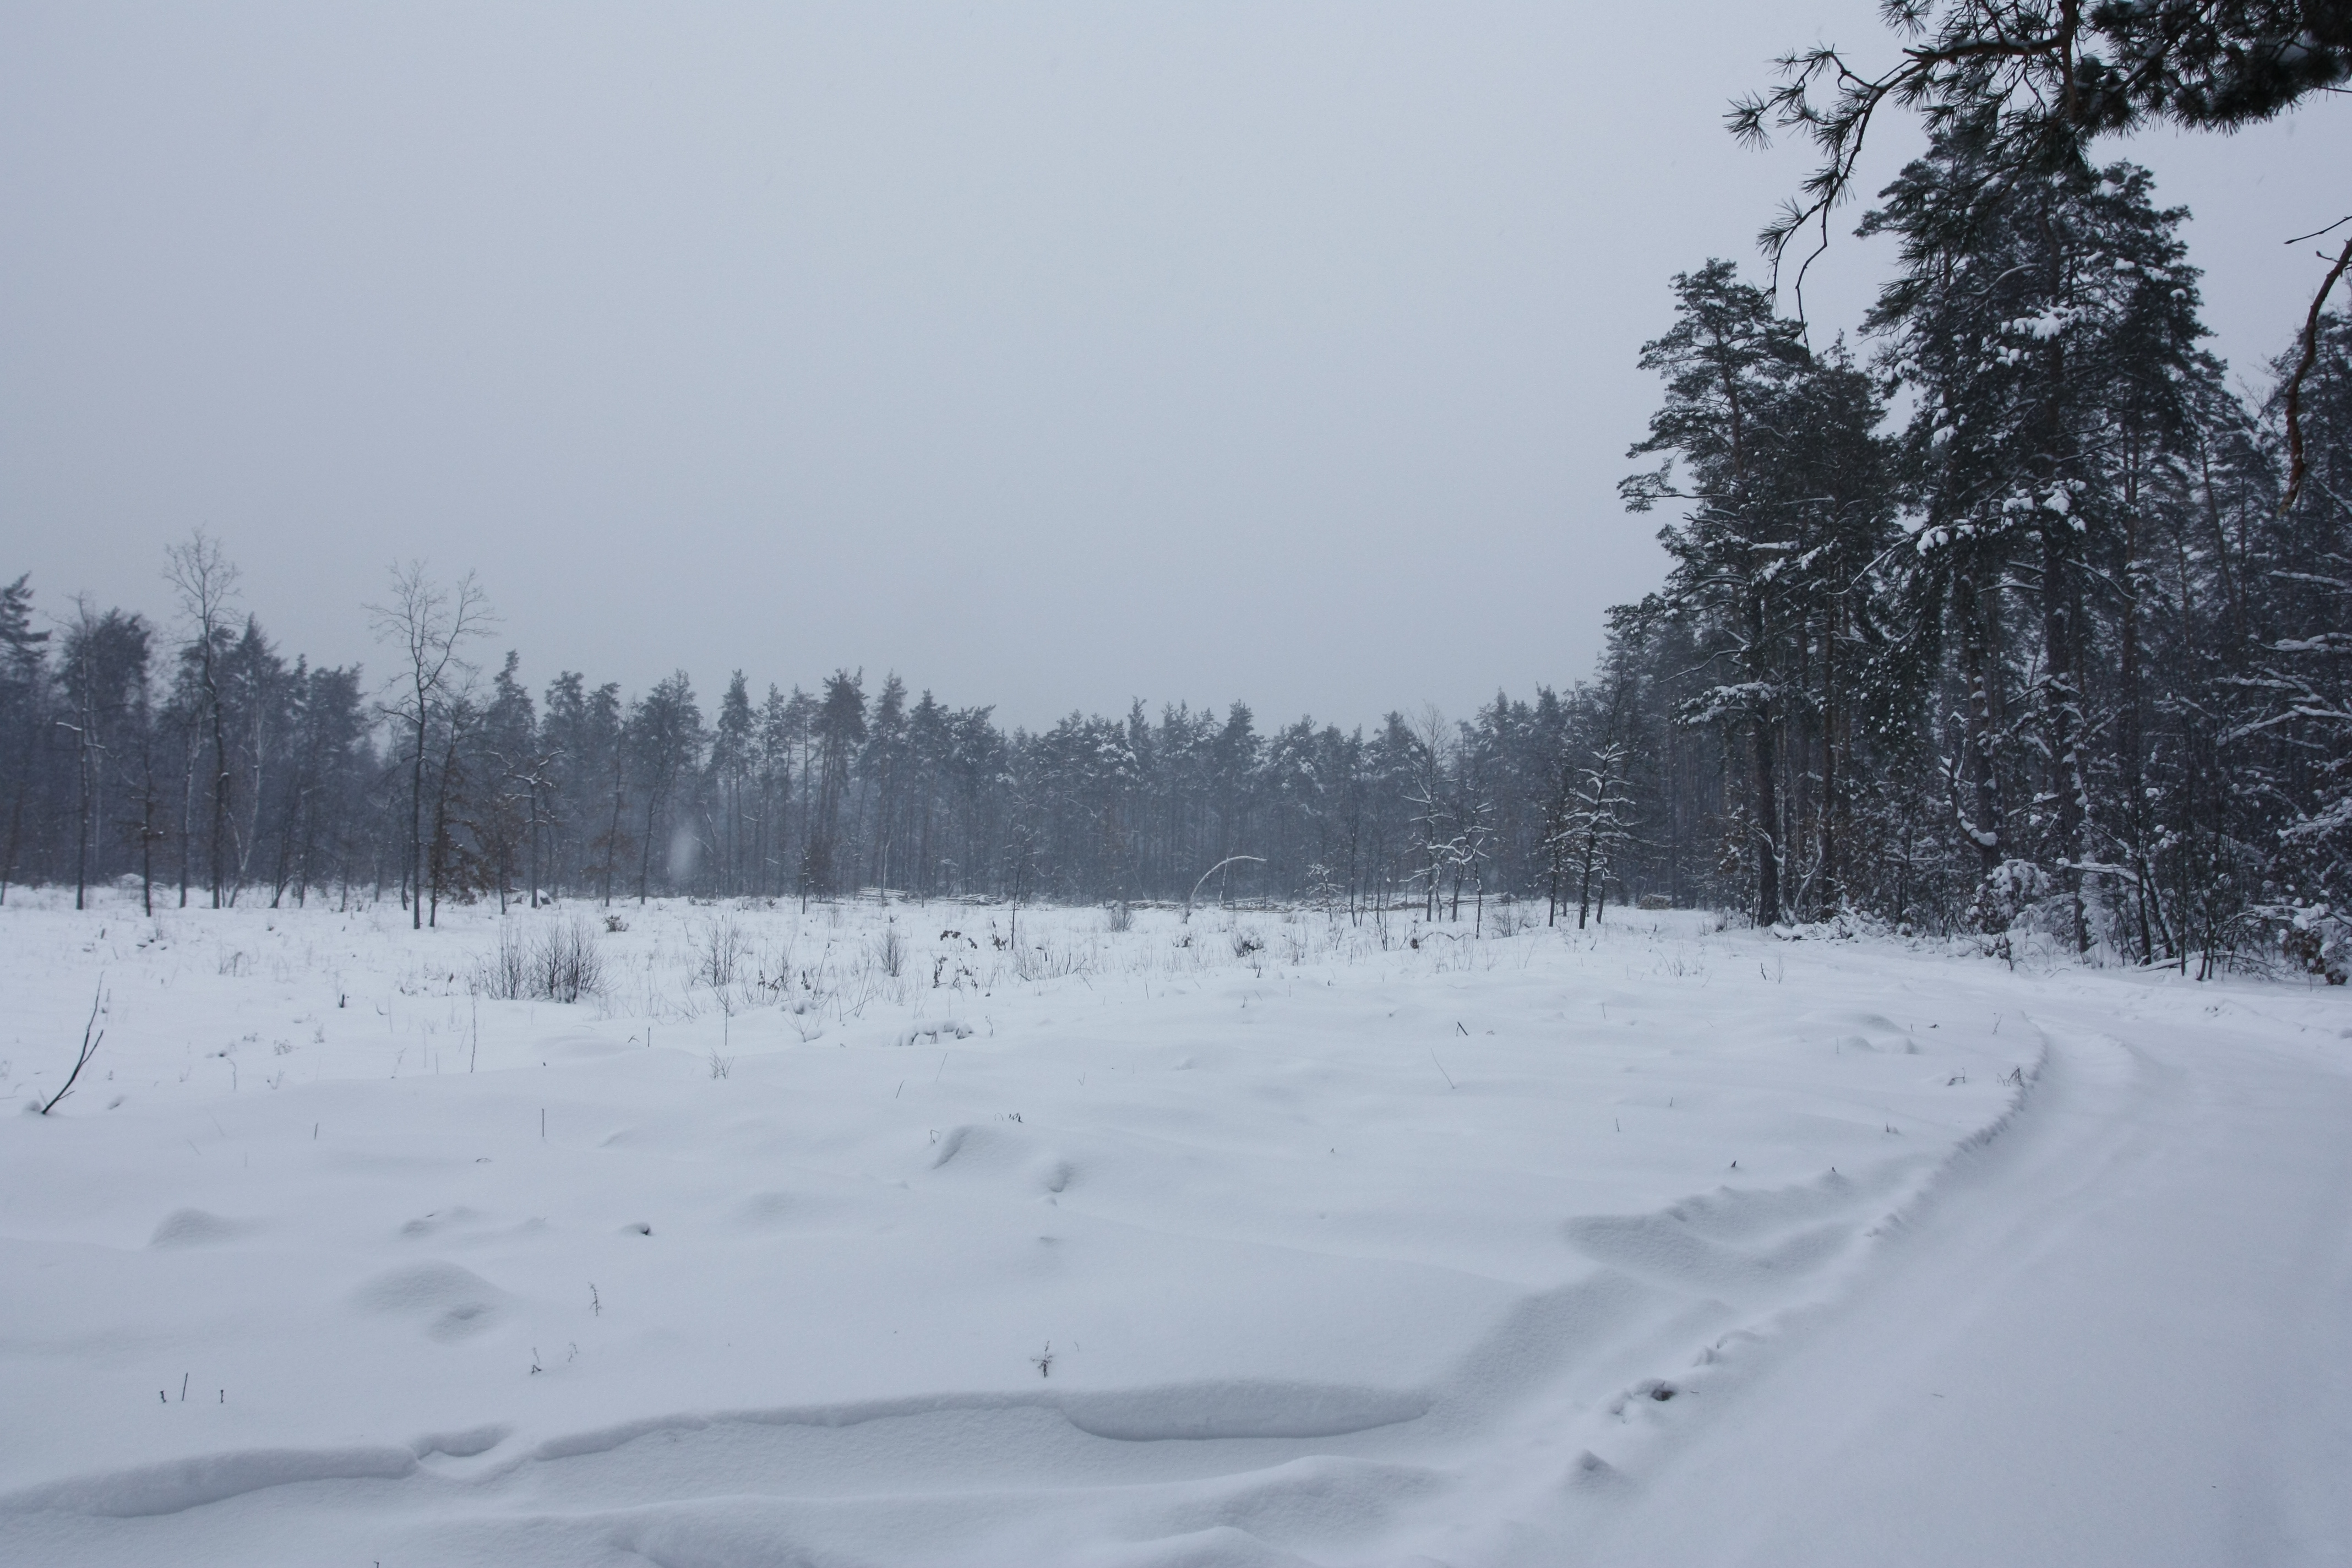 Ділянка Броварського лісу, вирублена у липні 2010 року. Там де зараз сніг — раніше був ліс. Фото: The Epoch Times Україна 